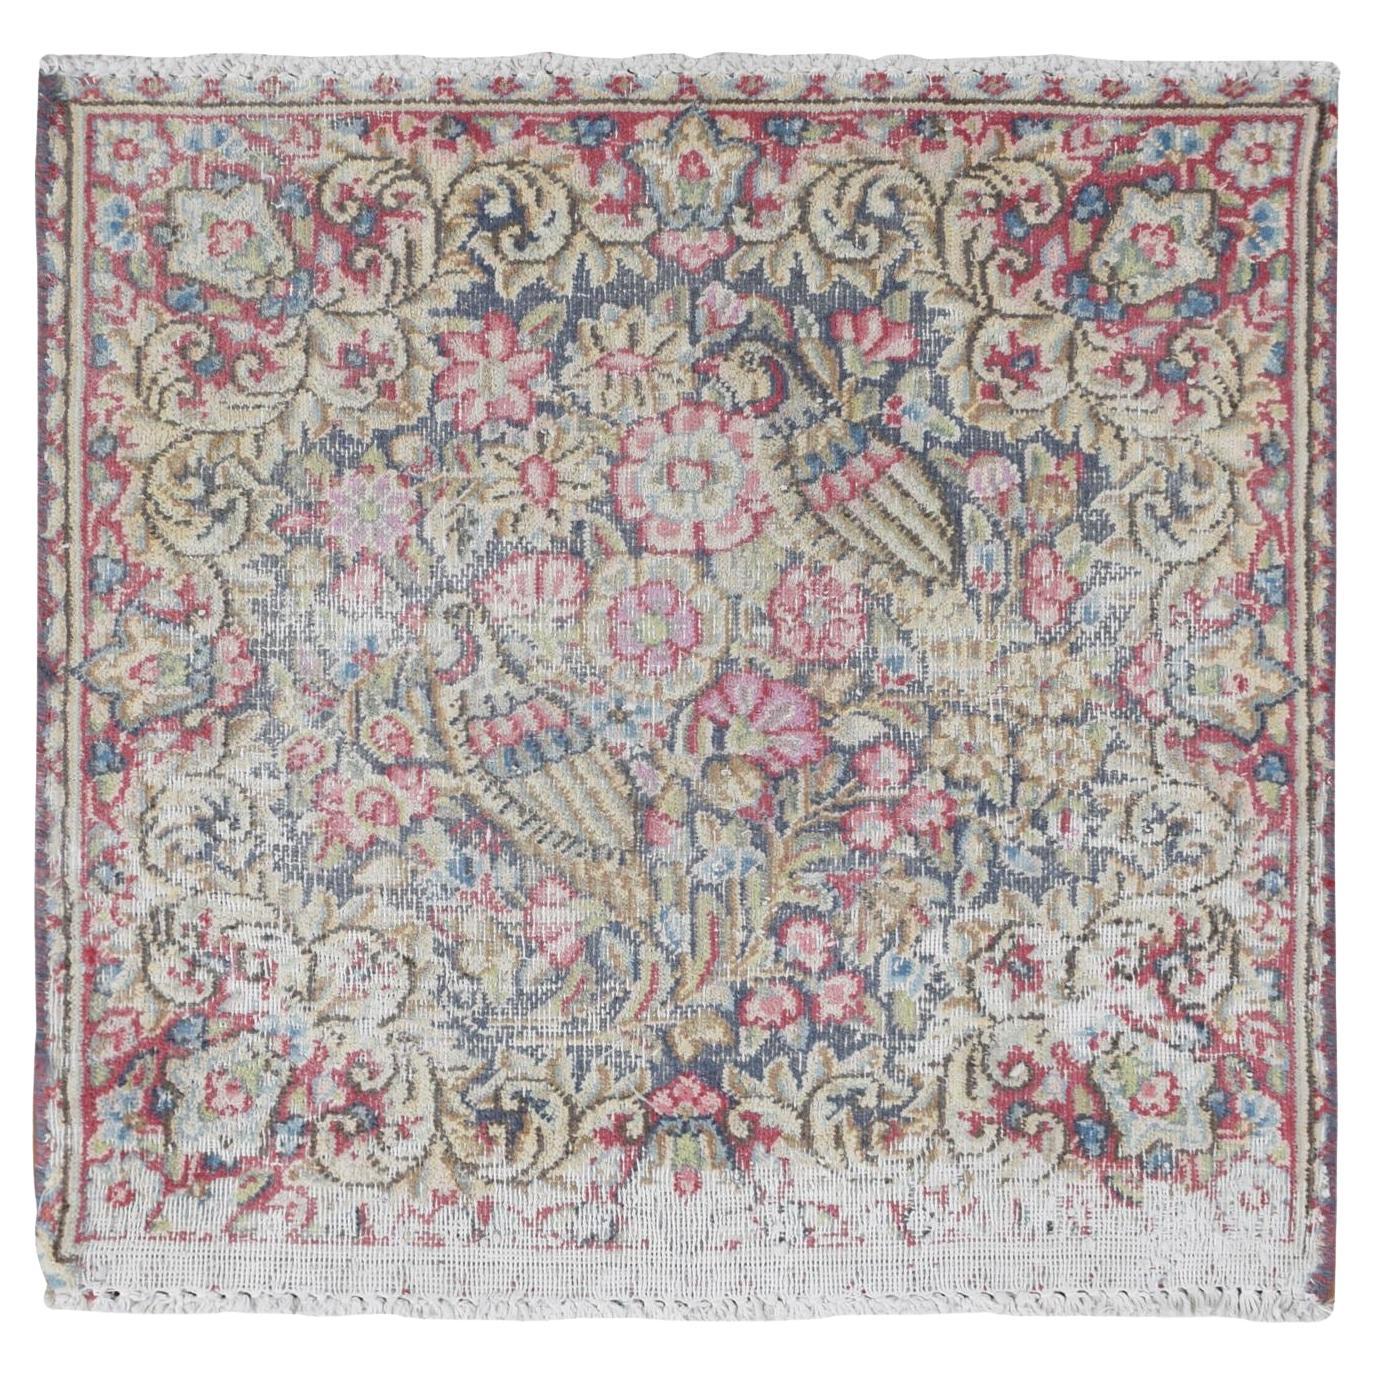 Blauer Vintage Persischer Kerman getragener Daunen-Teppich aus Wolle, handgeknüpft, quadratisch, 1'9"x1'9"